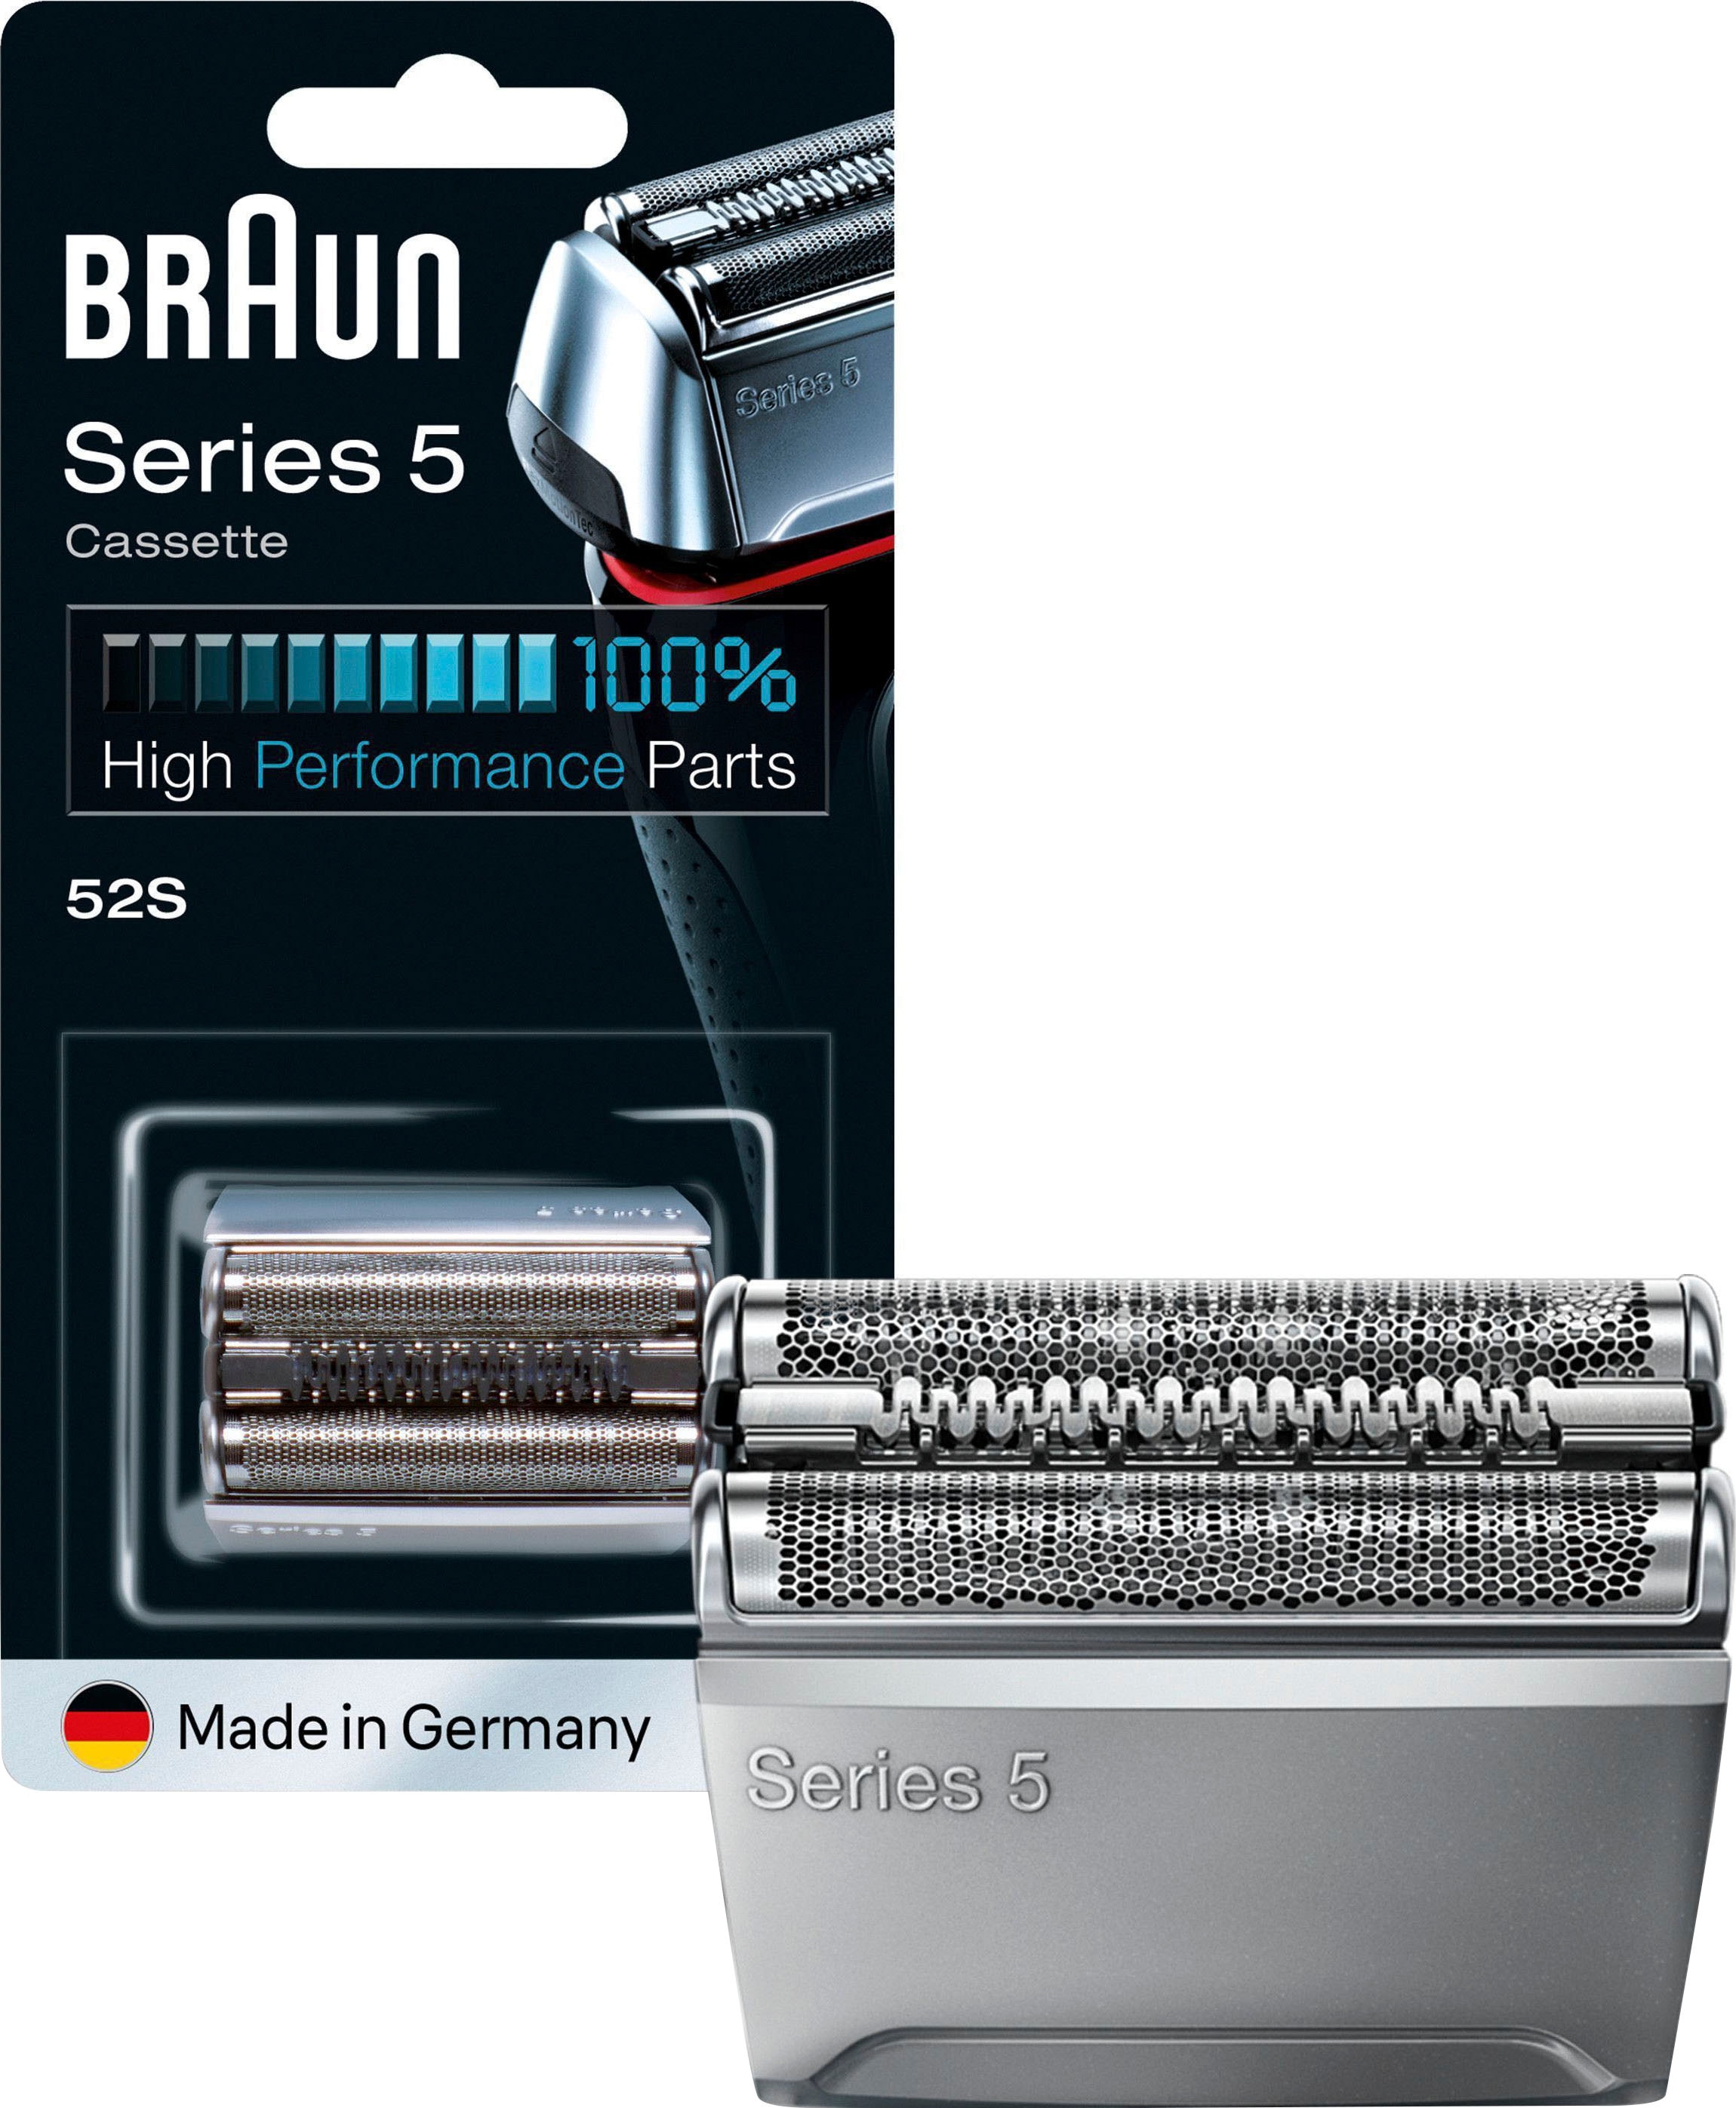 Braun Ersatzscherteil »Series 5 52B«, kompatibel mit Series 5 Rasierern